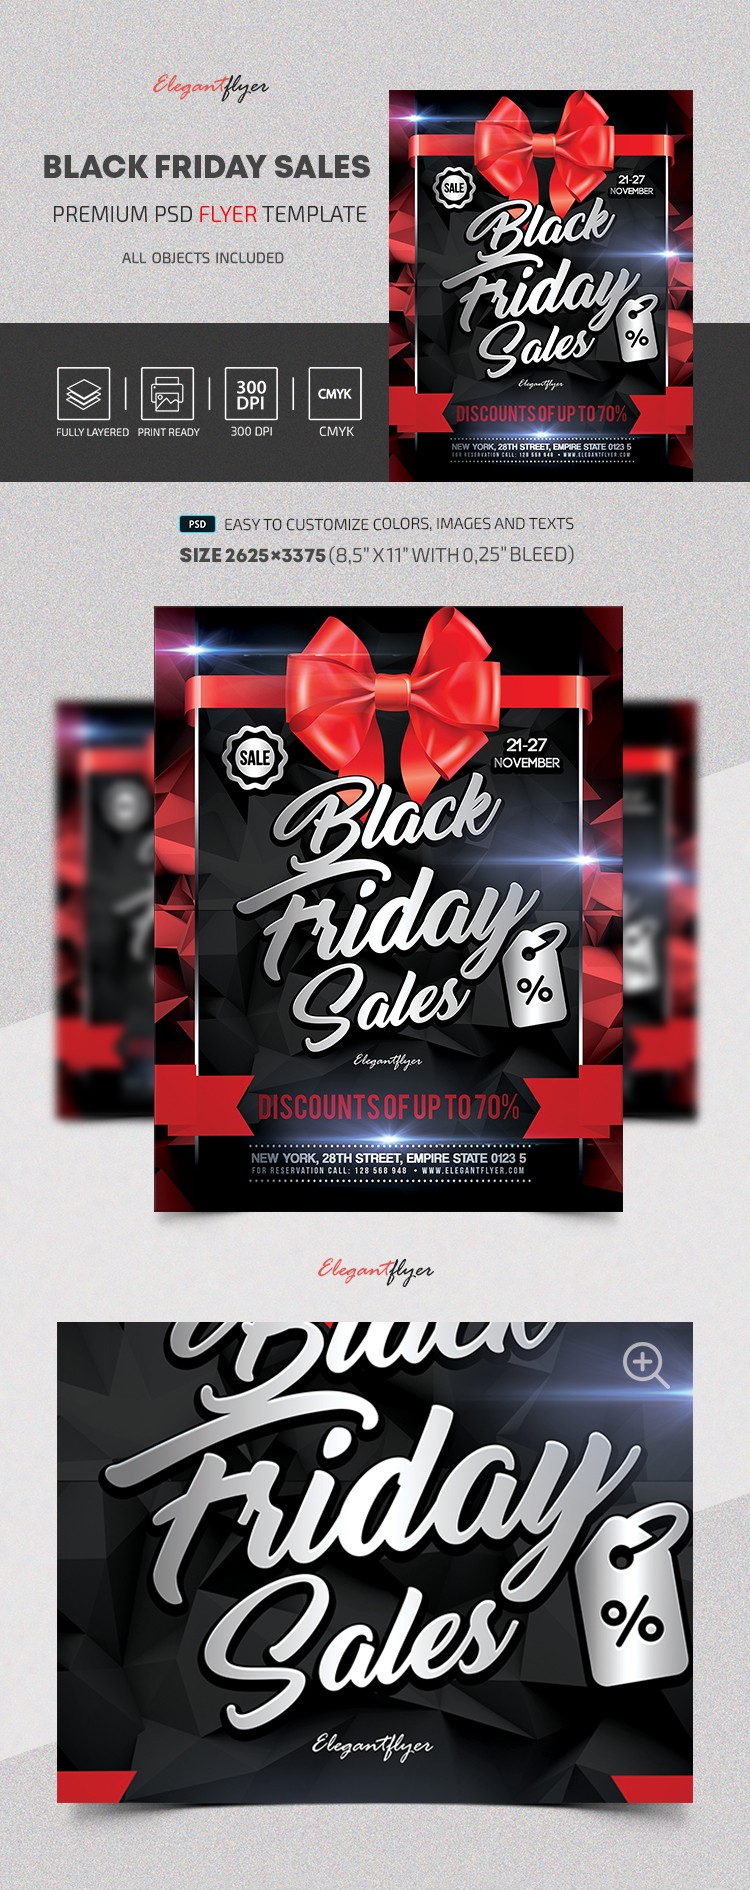 Black Friday Sales by ElegantFlyer